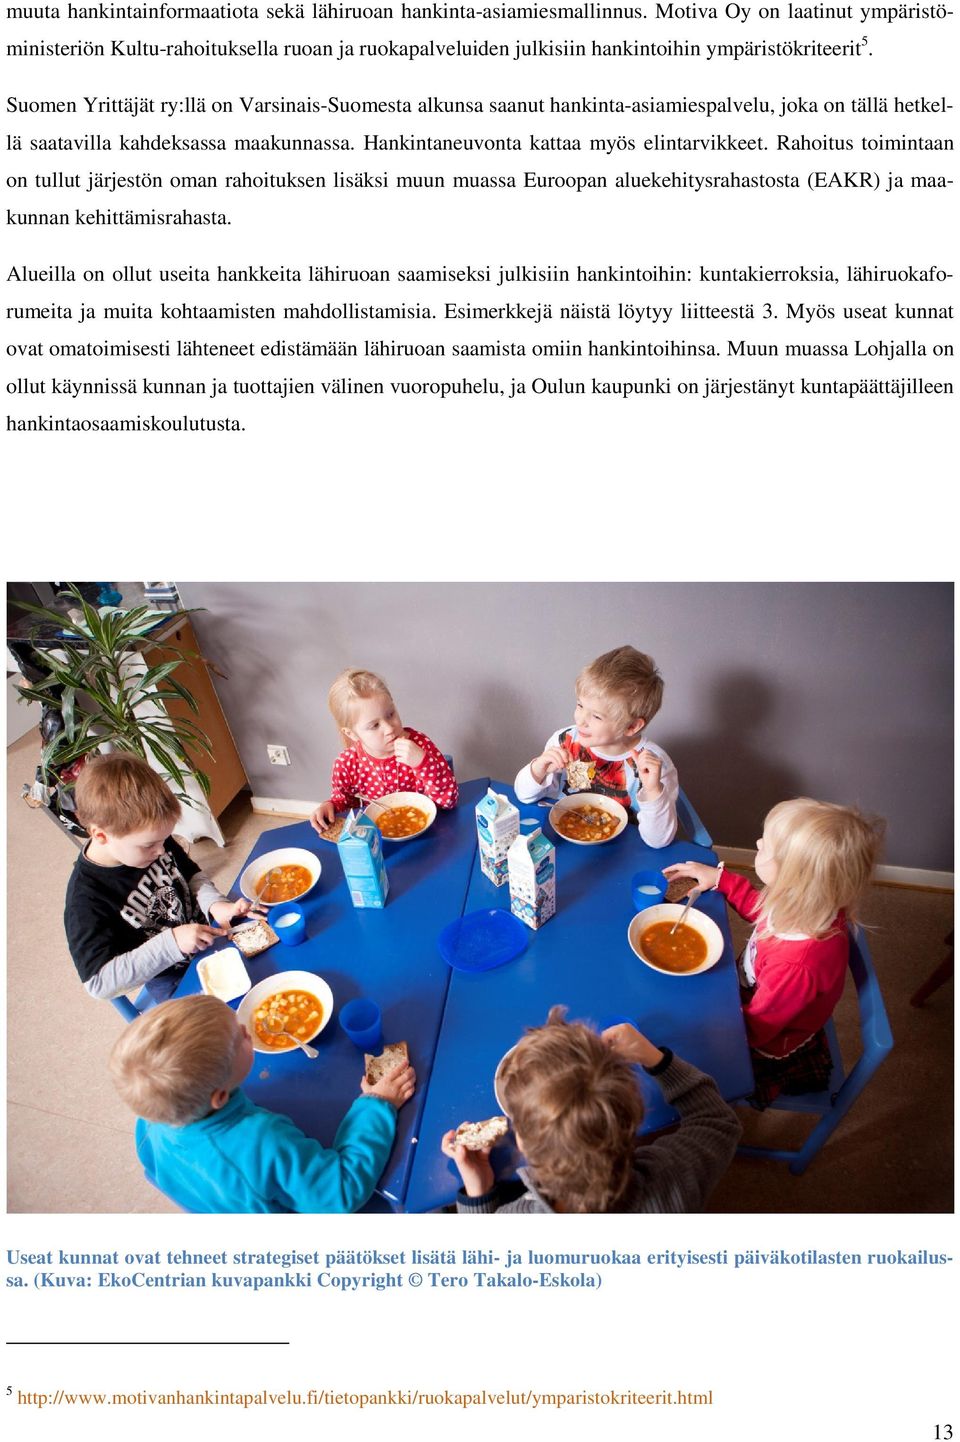 Suomen Yrittäjät ry:llä on Varsinais-Suomesta alkunsa saanut hankinta-asiamiespalvelu, joka on tällä hetkellä saatavilla kahdeksassa maakunnassa. Hankintaneuvonta kattaa myös elintarvikkeet.